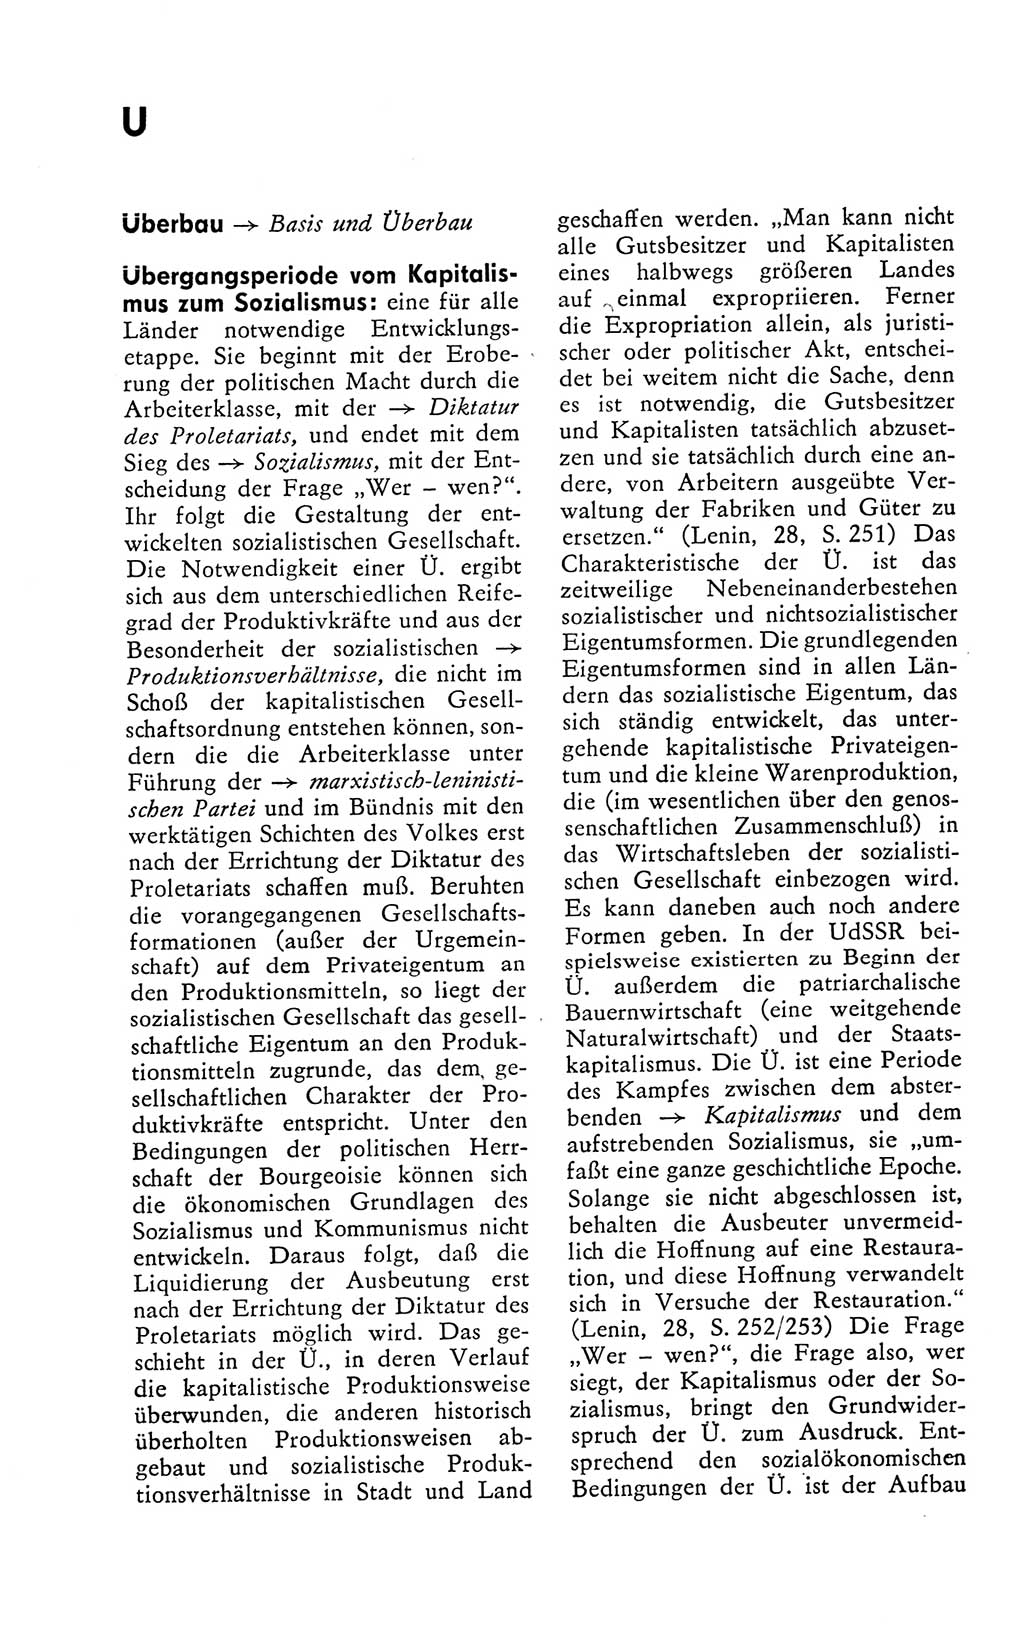 Kleines politisches Wörterbuch [Deutsche Demokratische Republik (DDR)] 1978, Seite 904 (Kl. pol. Wb. DDR 1978, S. 904)